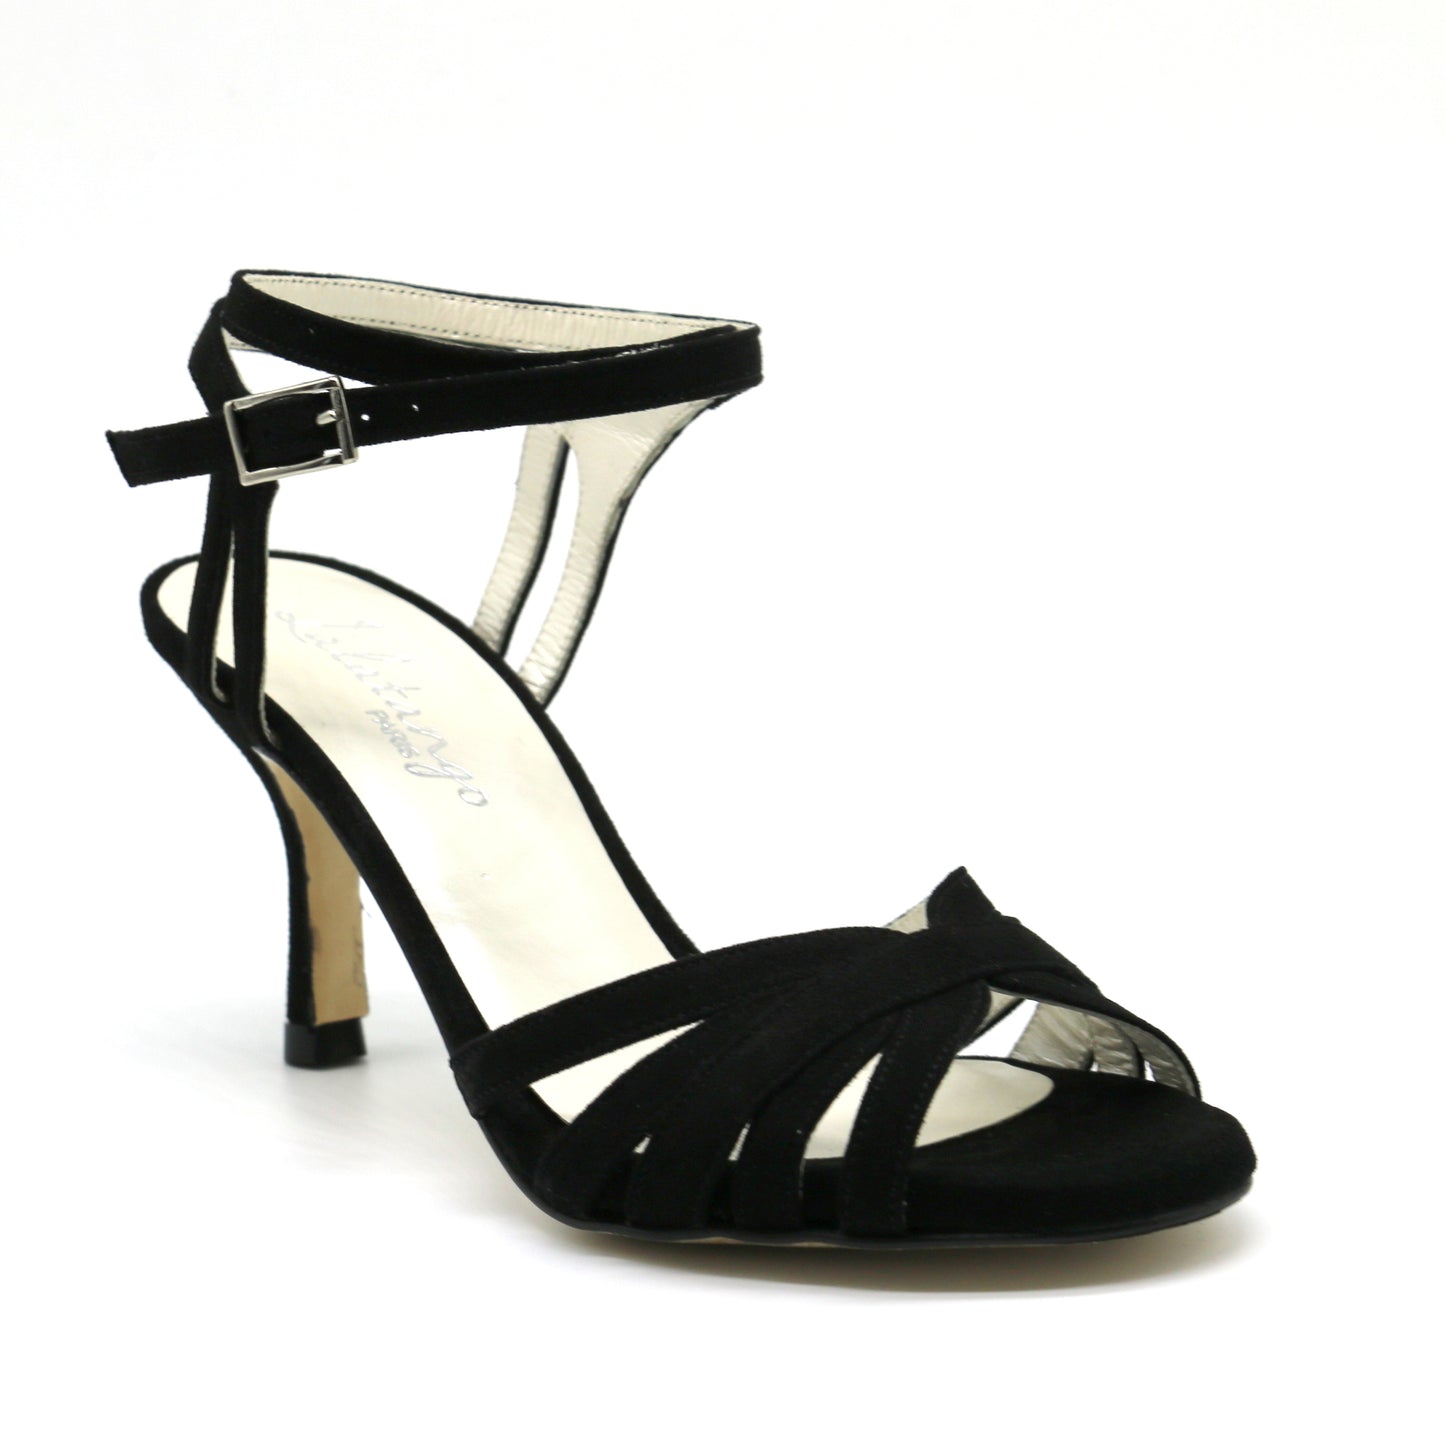 Libre black suede heels 7cm